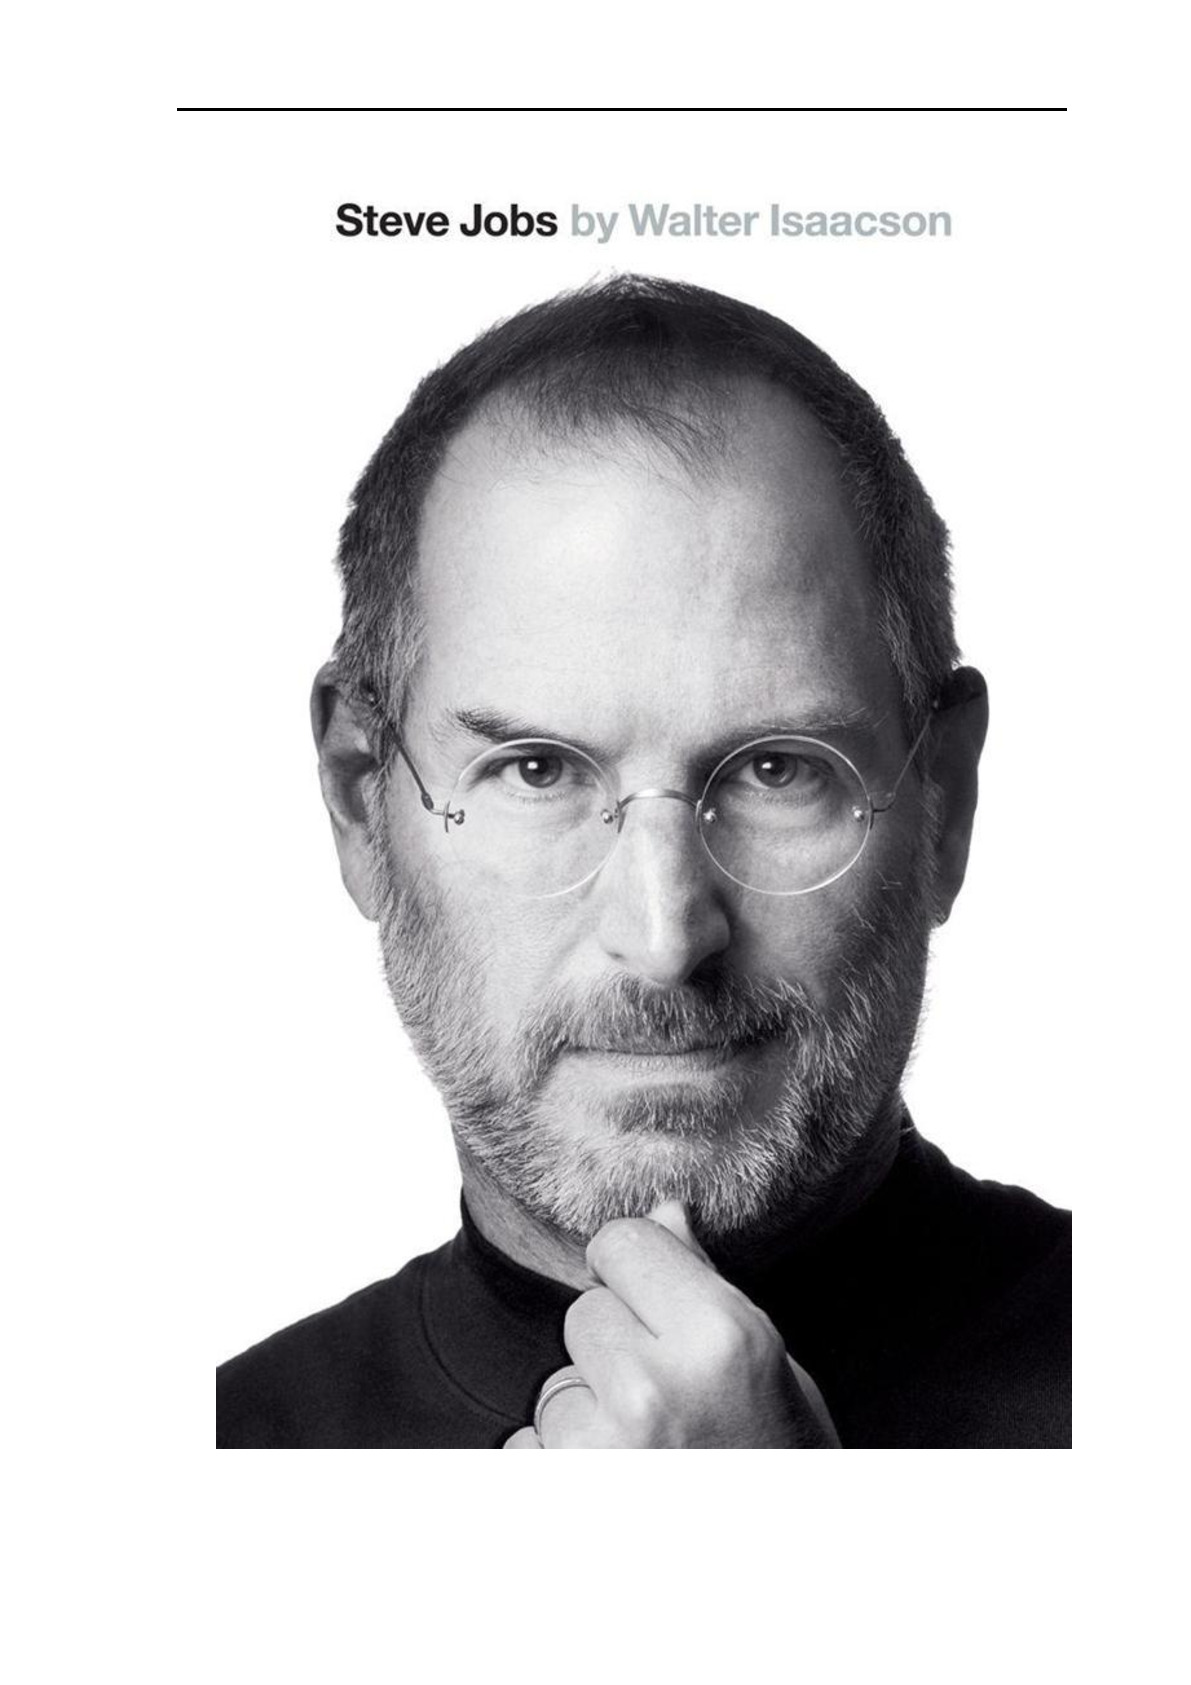 Steve Jobs A Biography 【史蒂夫乔布斯传】